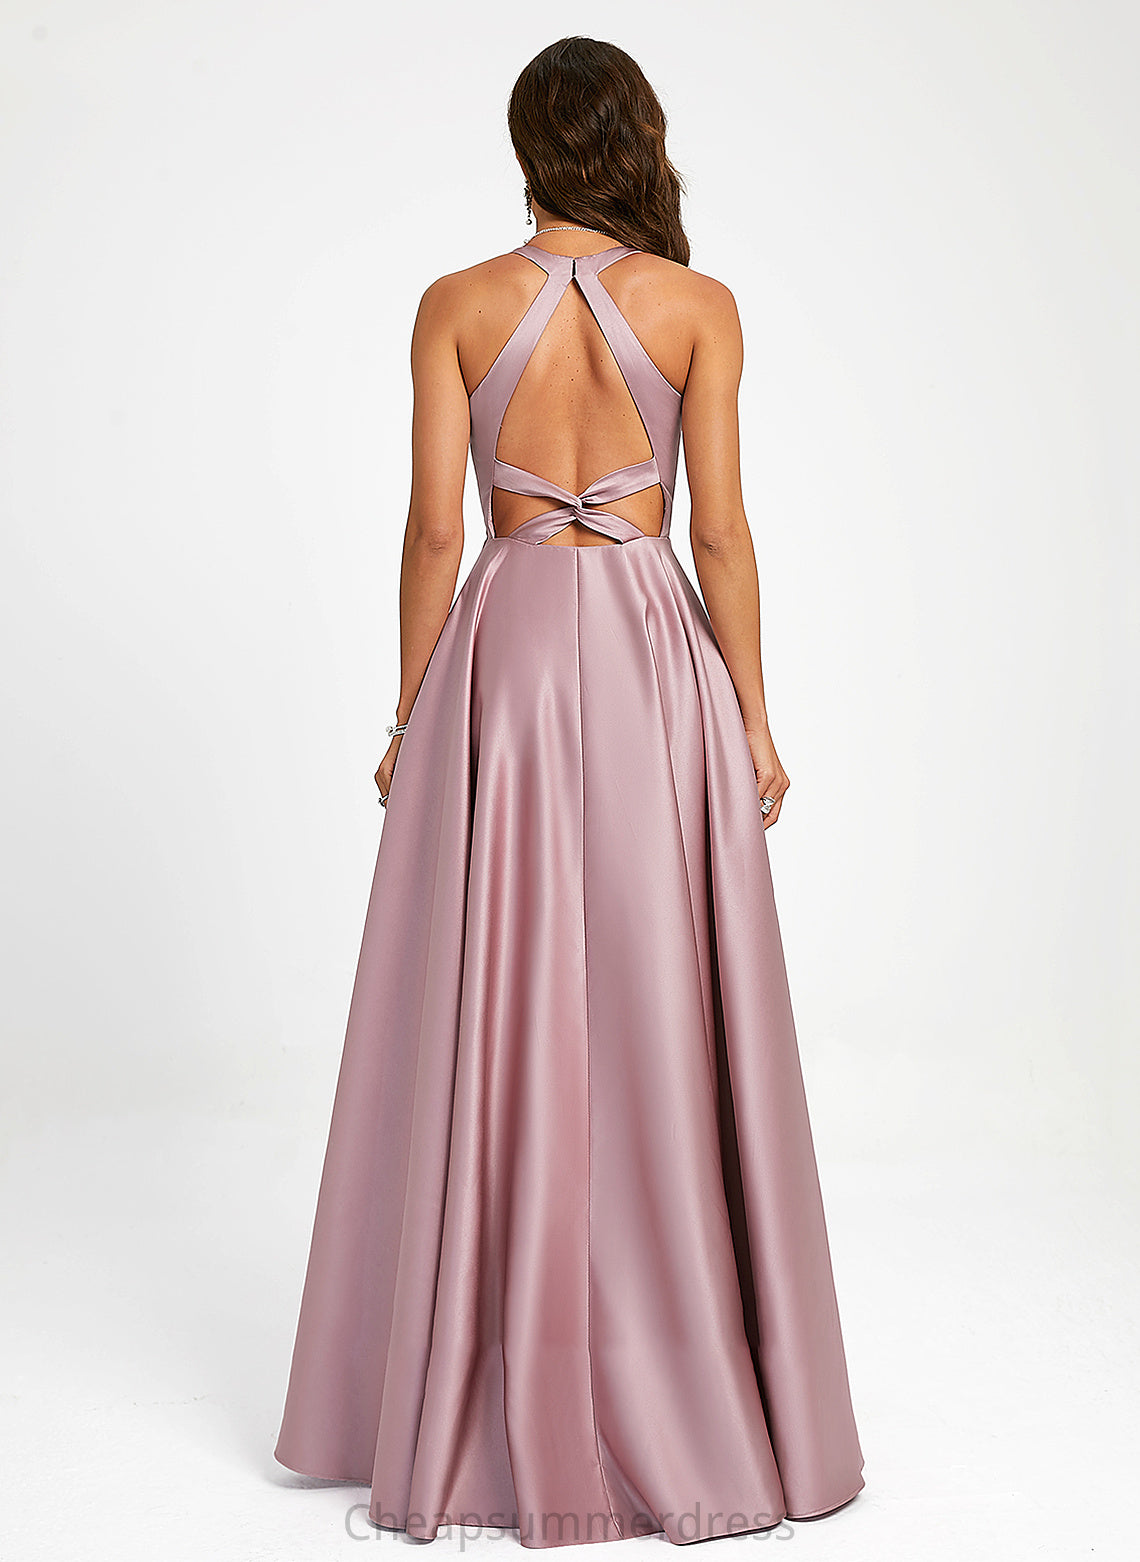 Floor-Length Katelynn Prom Dresses V-neck Satin A-Line